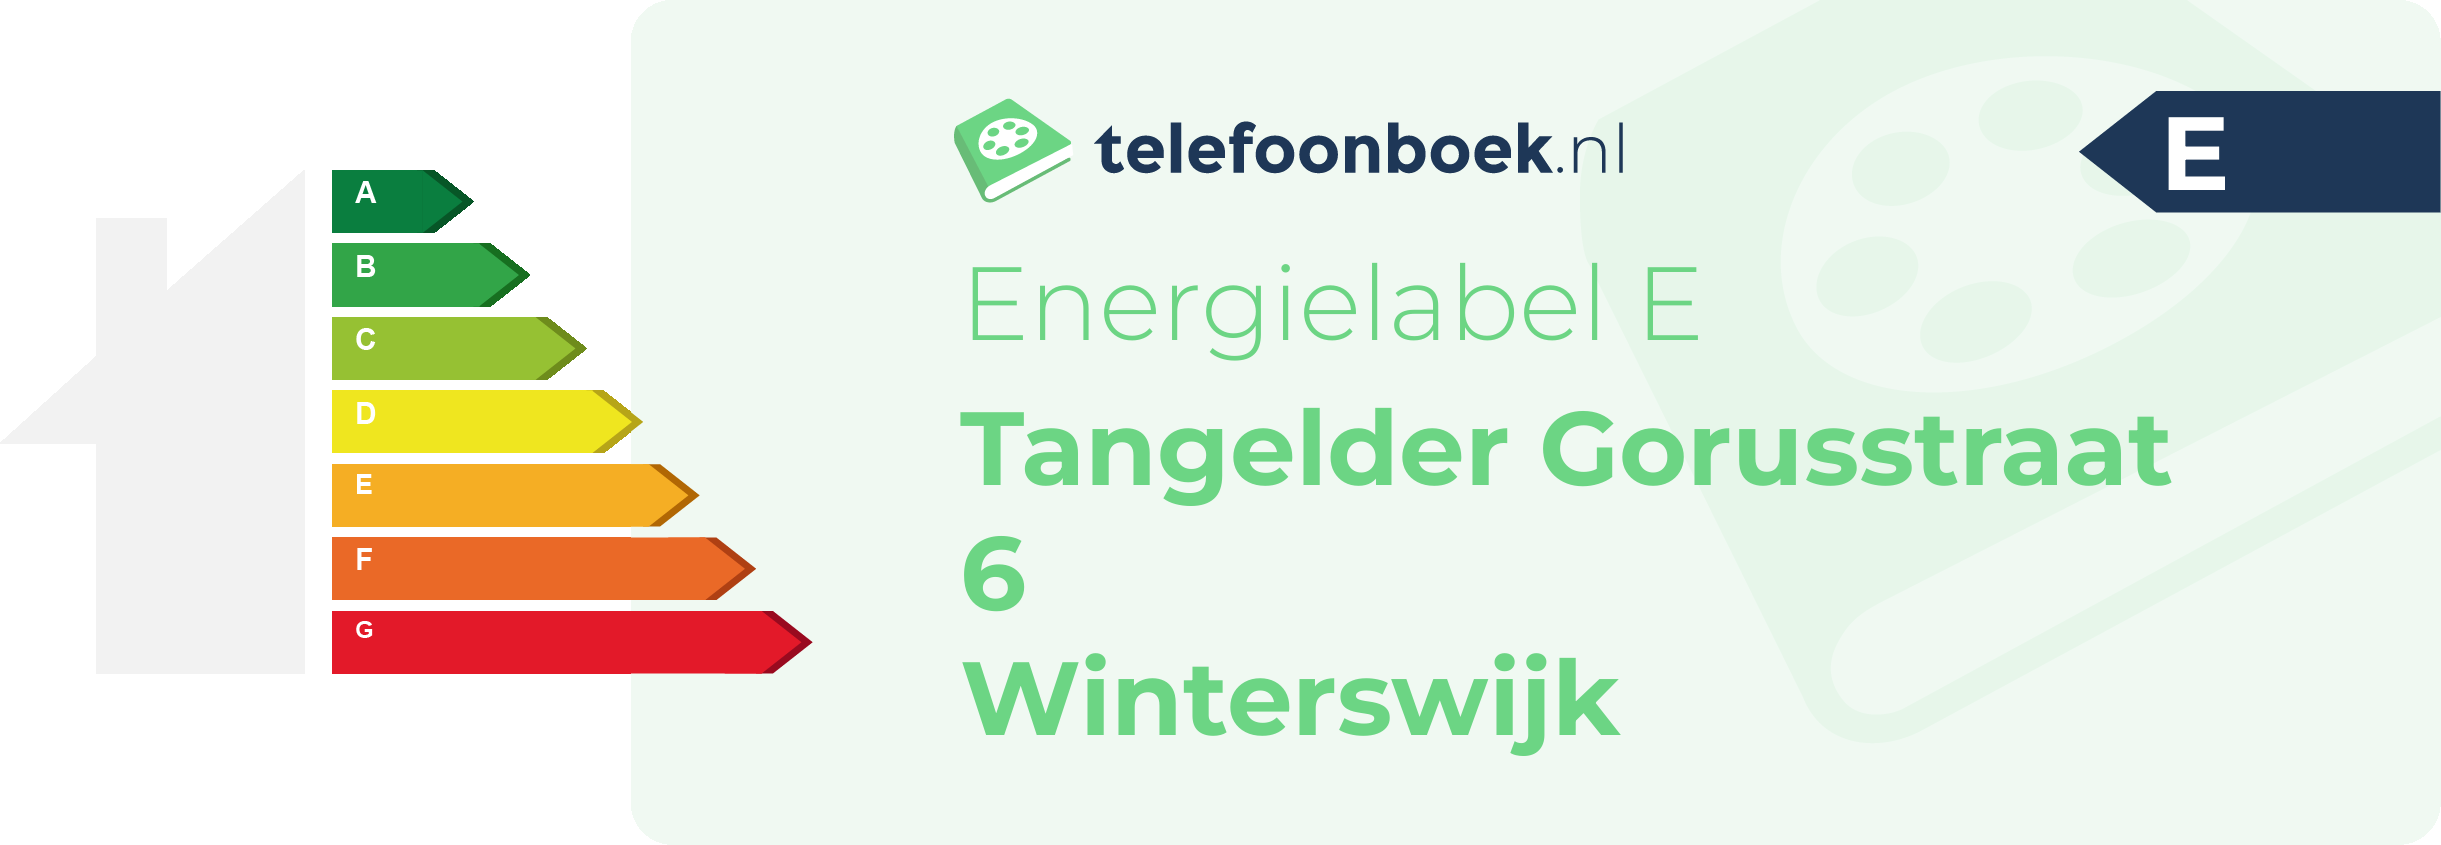 Energielabel Tangelder Gorusstraat 6 Winterswijk